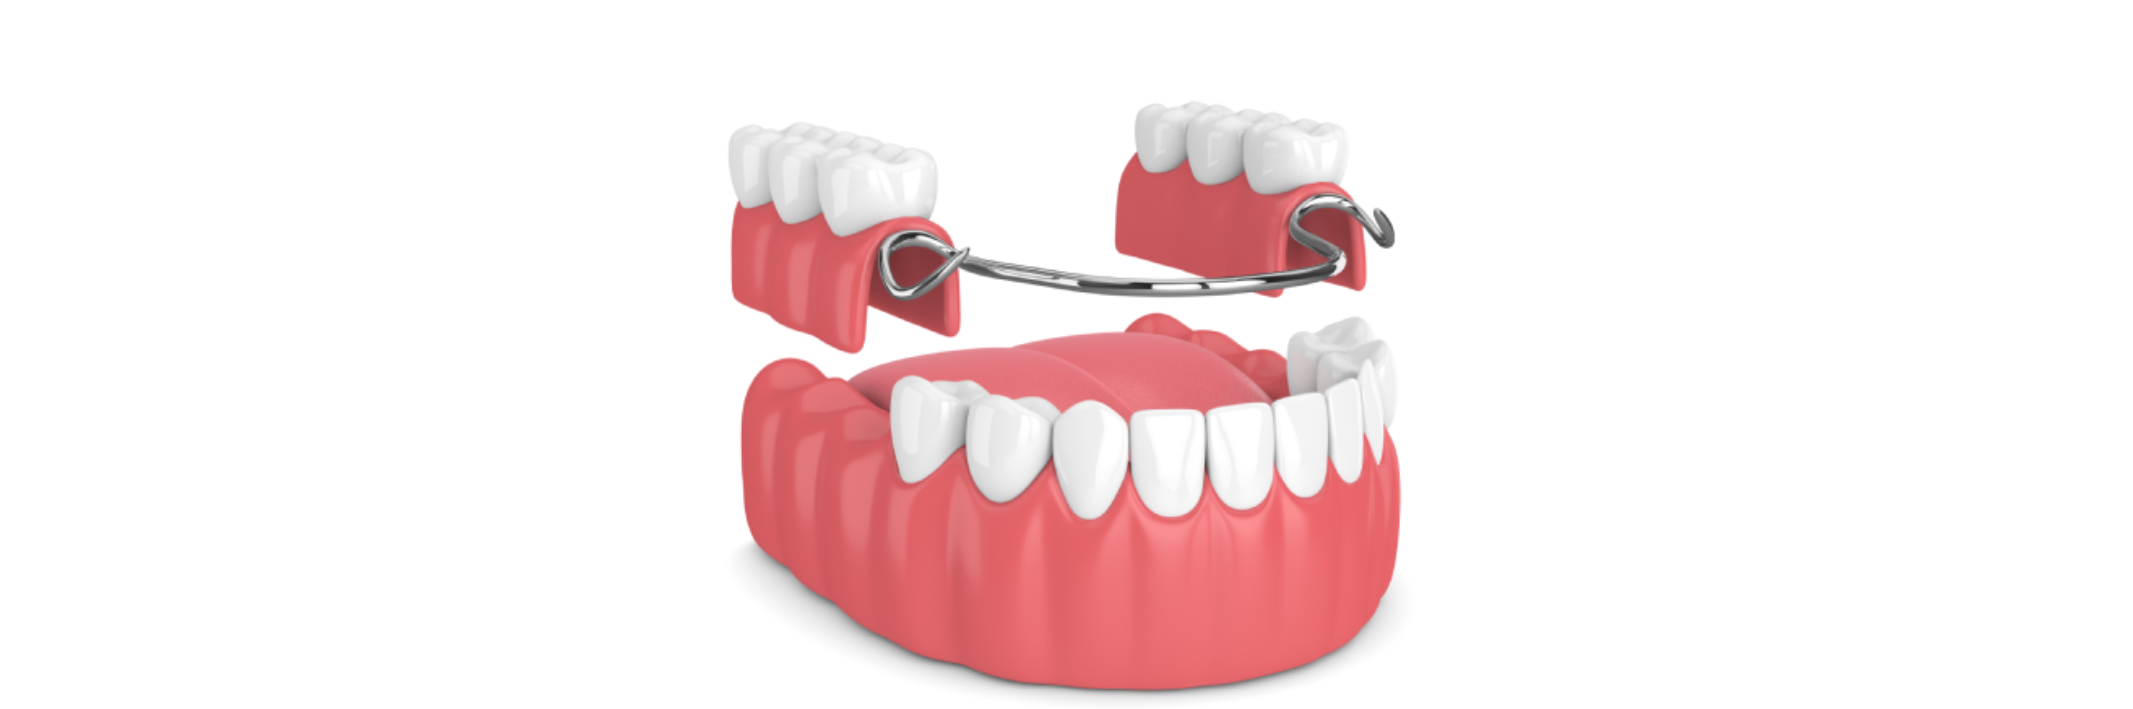 Top Tip When Choosing Dentures